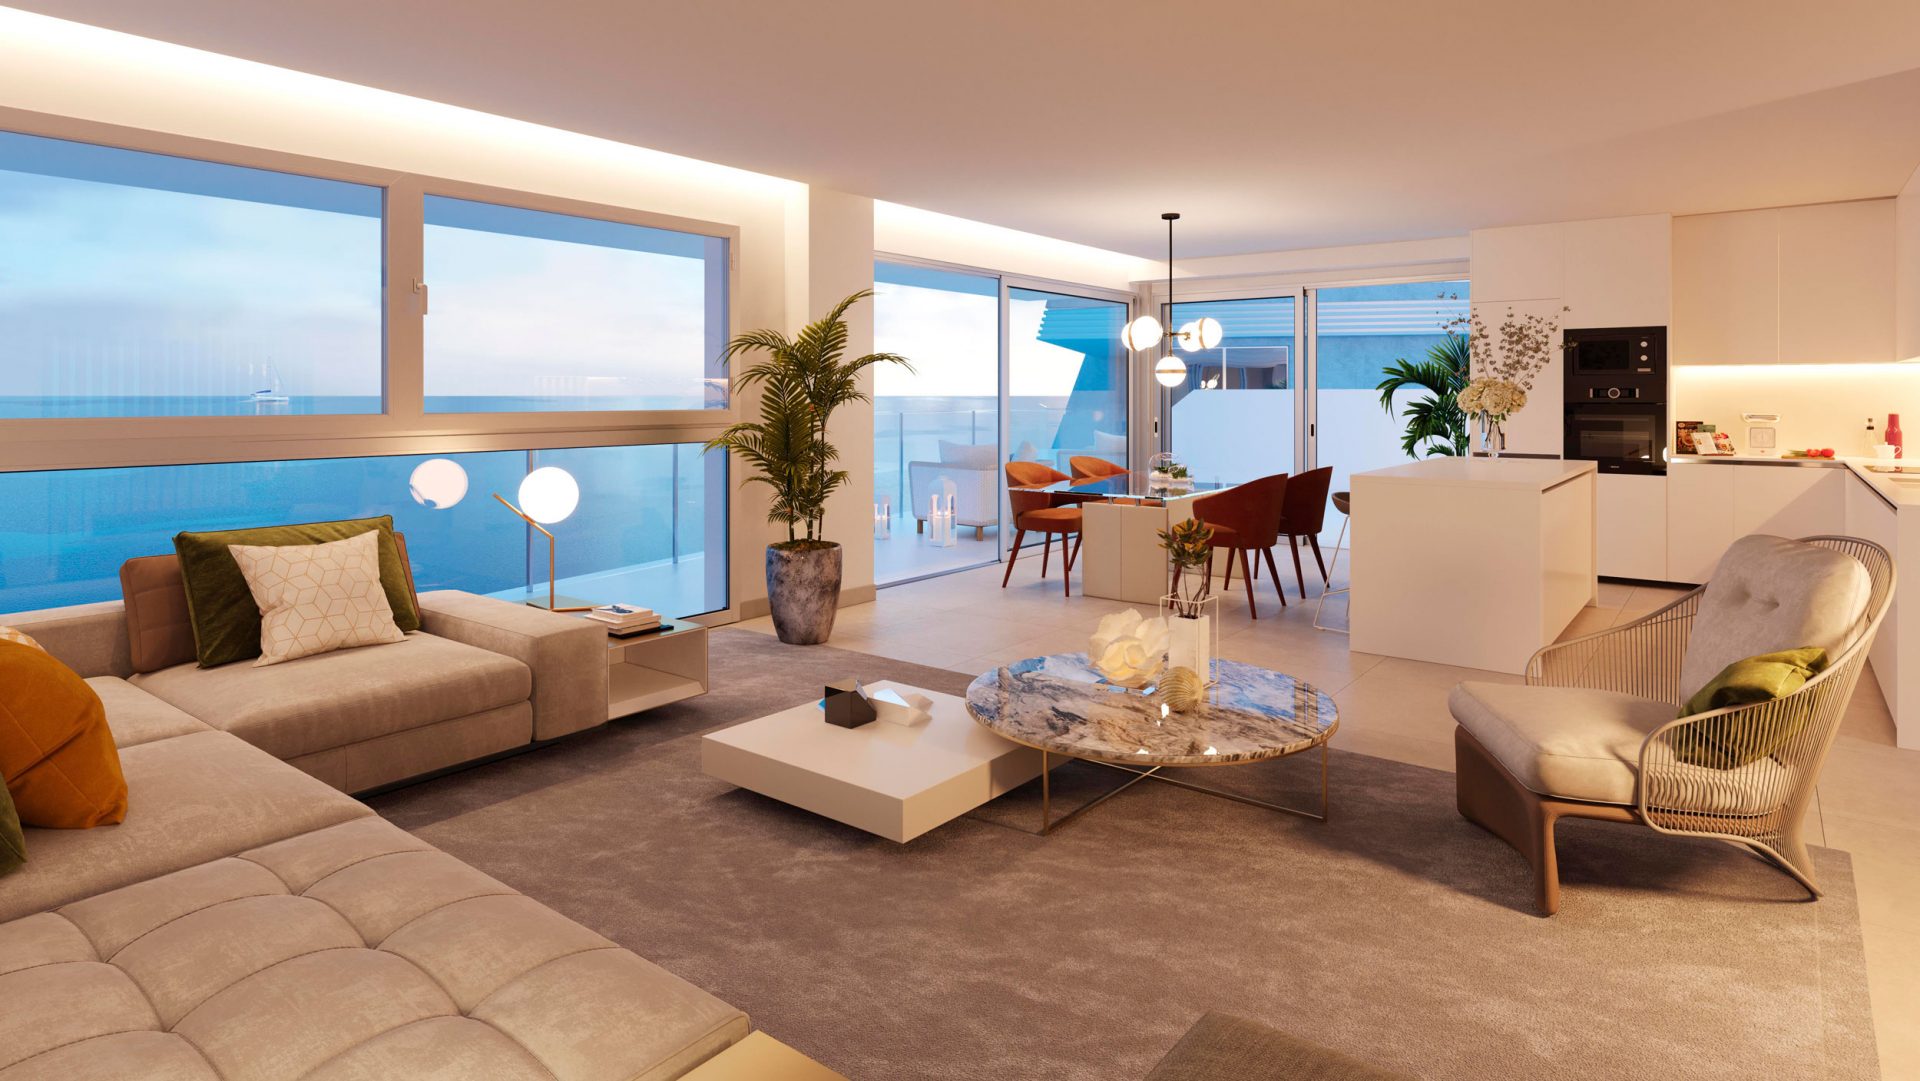 New Build Developments for Sale in Marbella, & the Costa del Sol